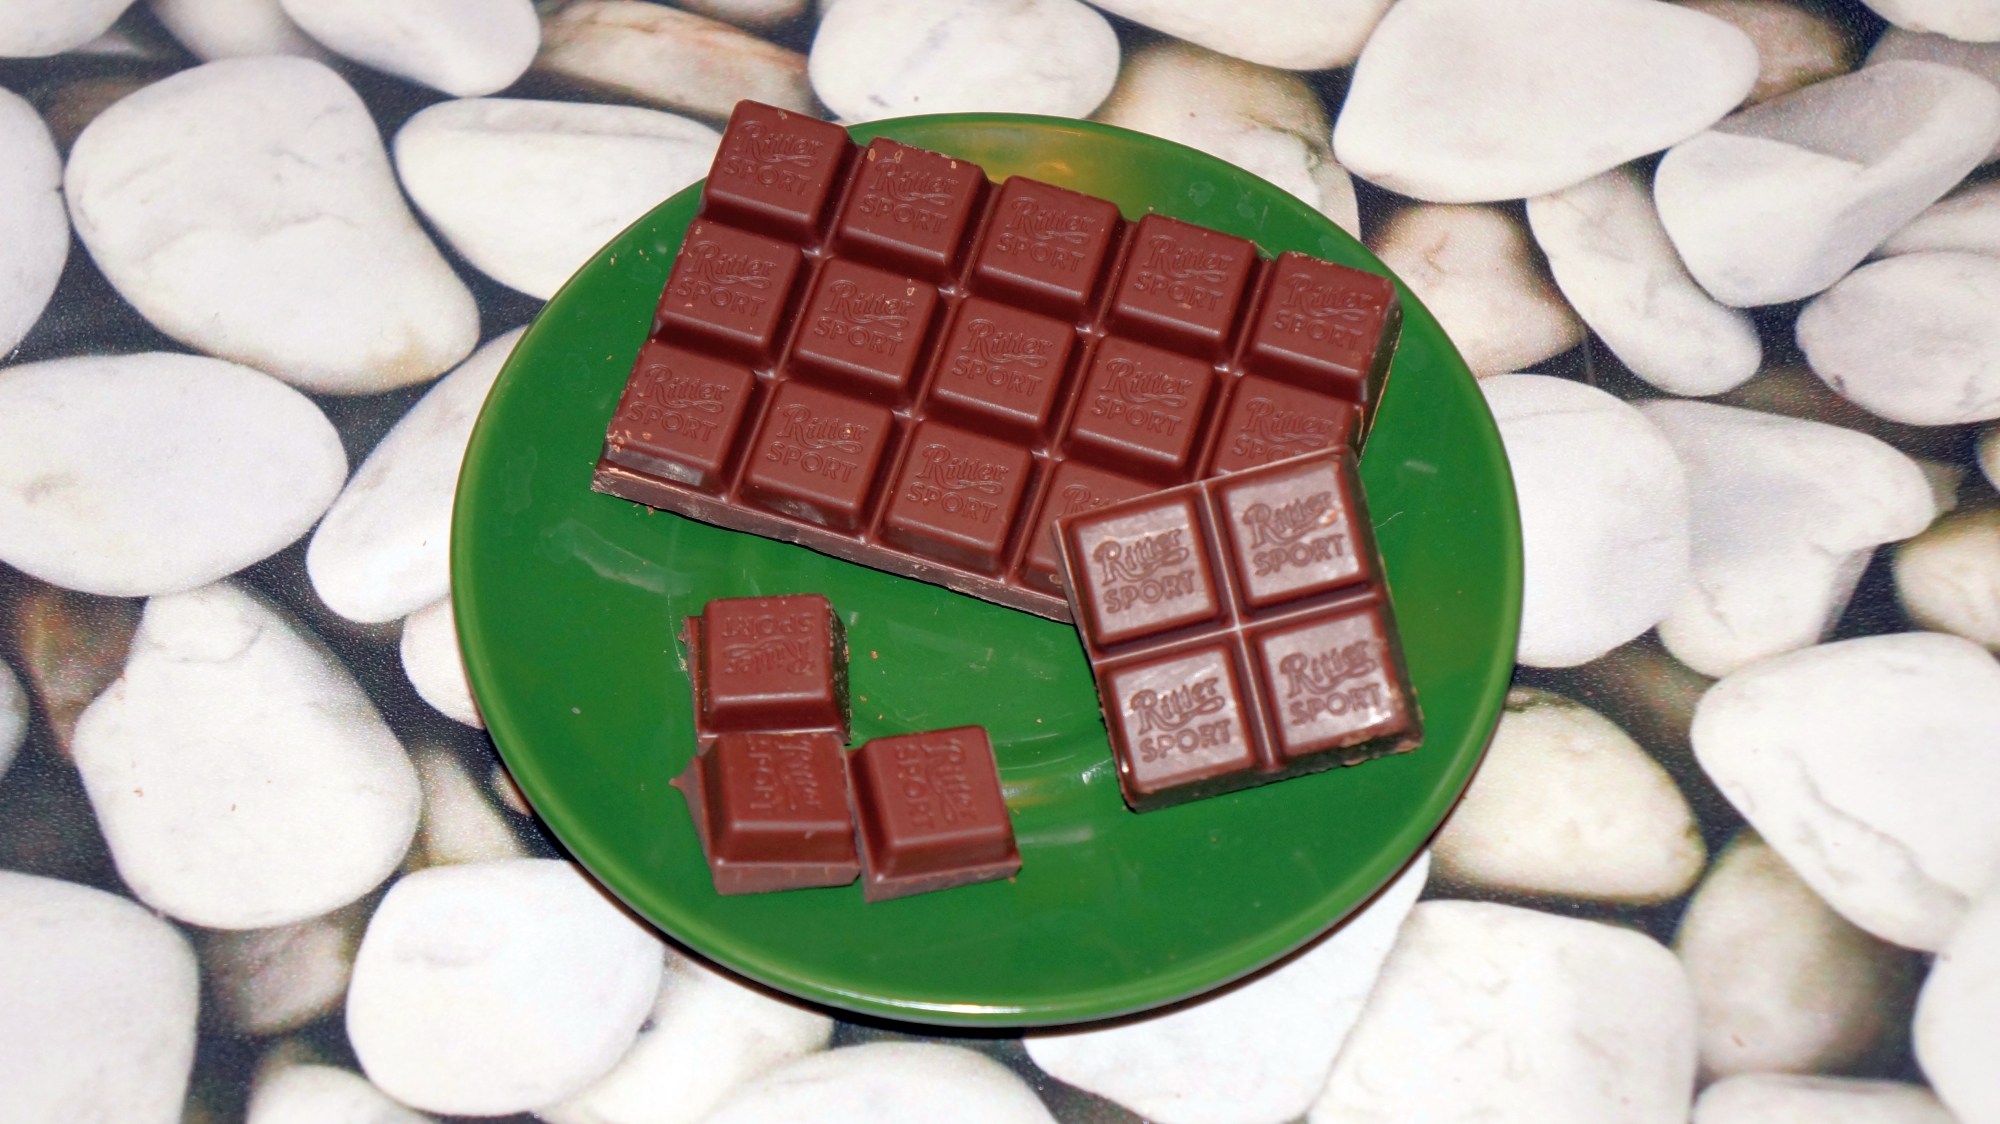 Шоколад Ritter Sport Extra Cocoa 55% какао с мягким вкусом из Ганы